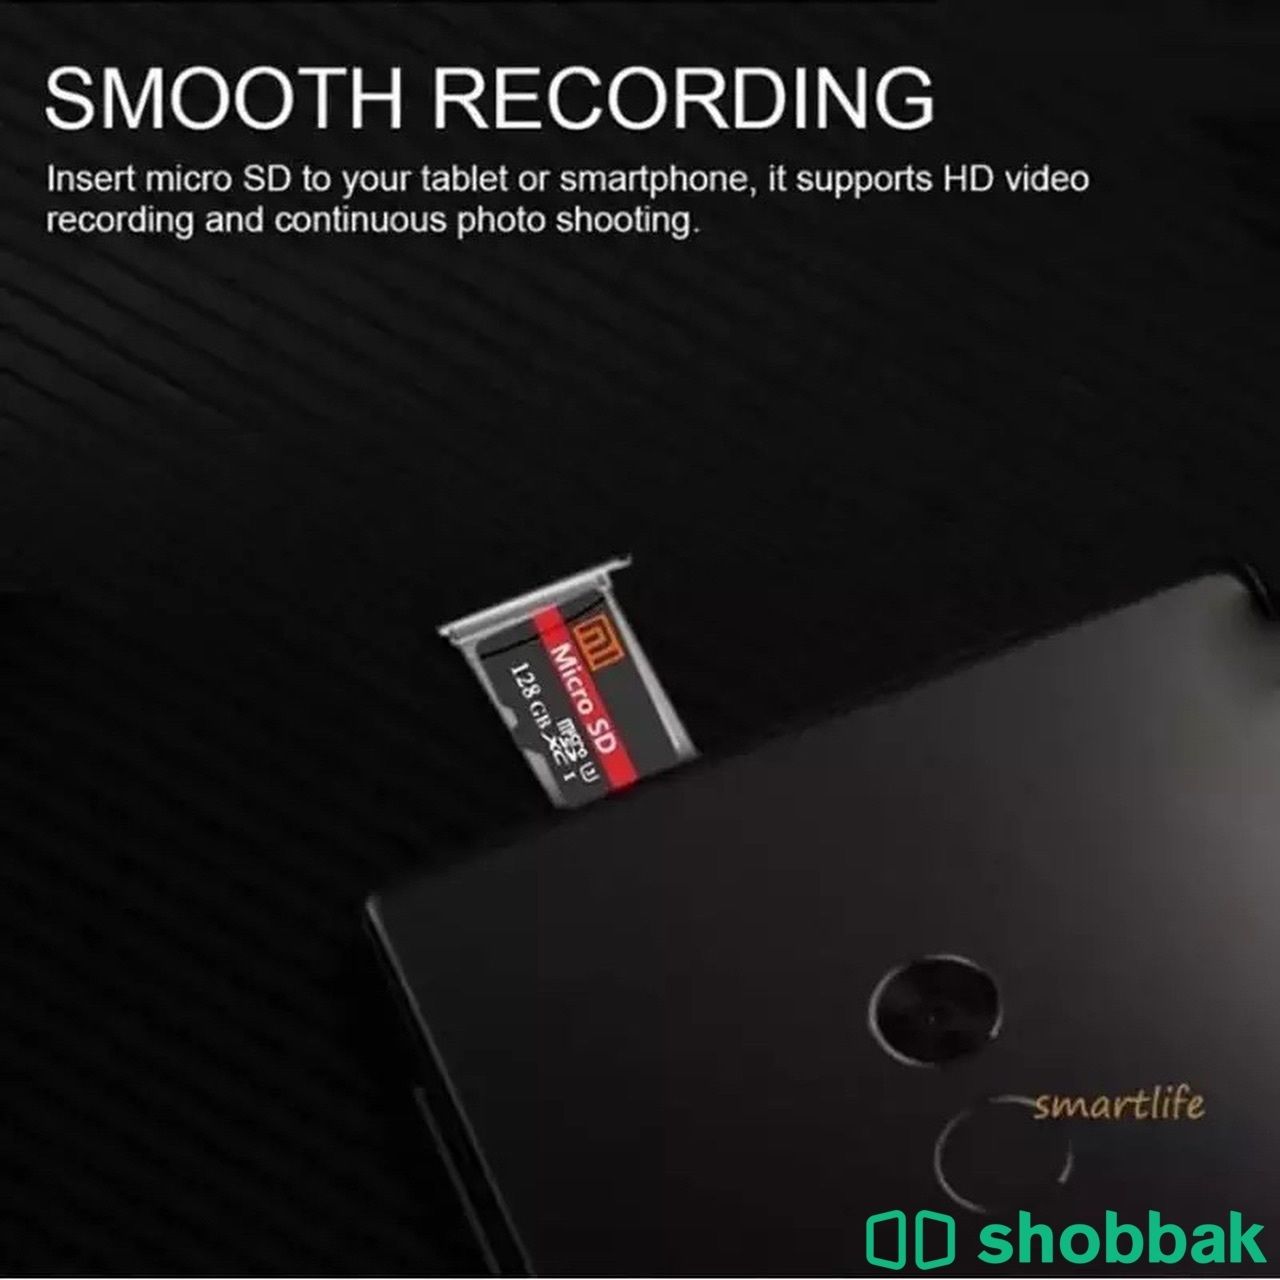 بطاقة ذاكرة SD card عالية السرعة من شاومي شباك السعودية